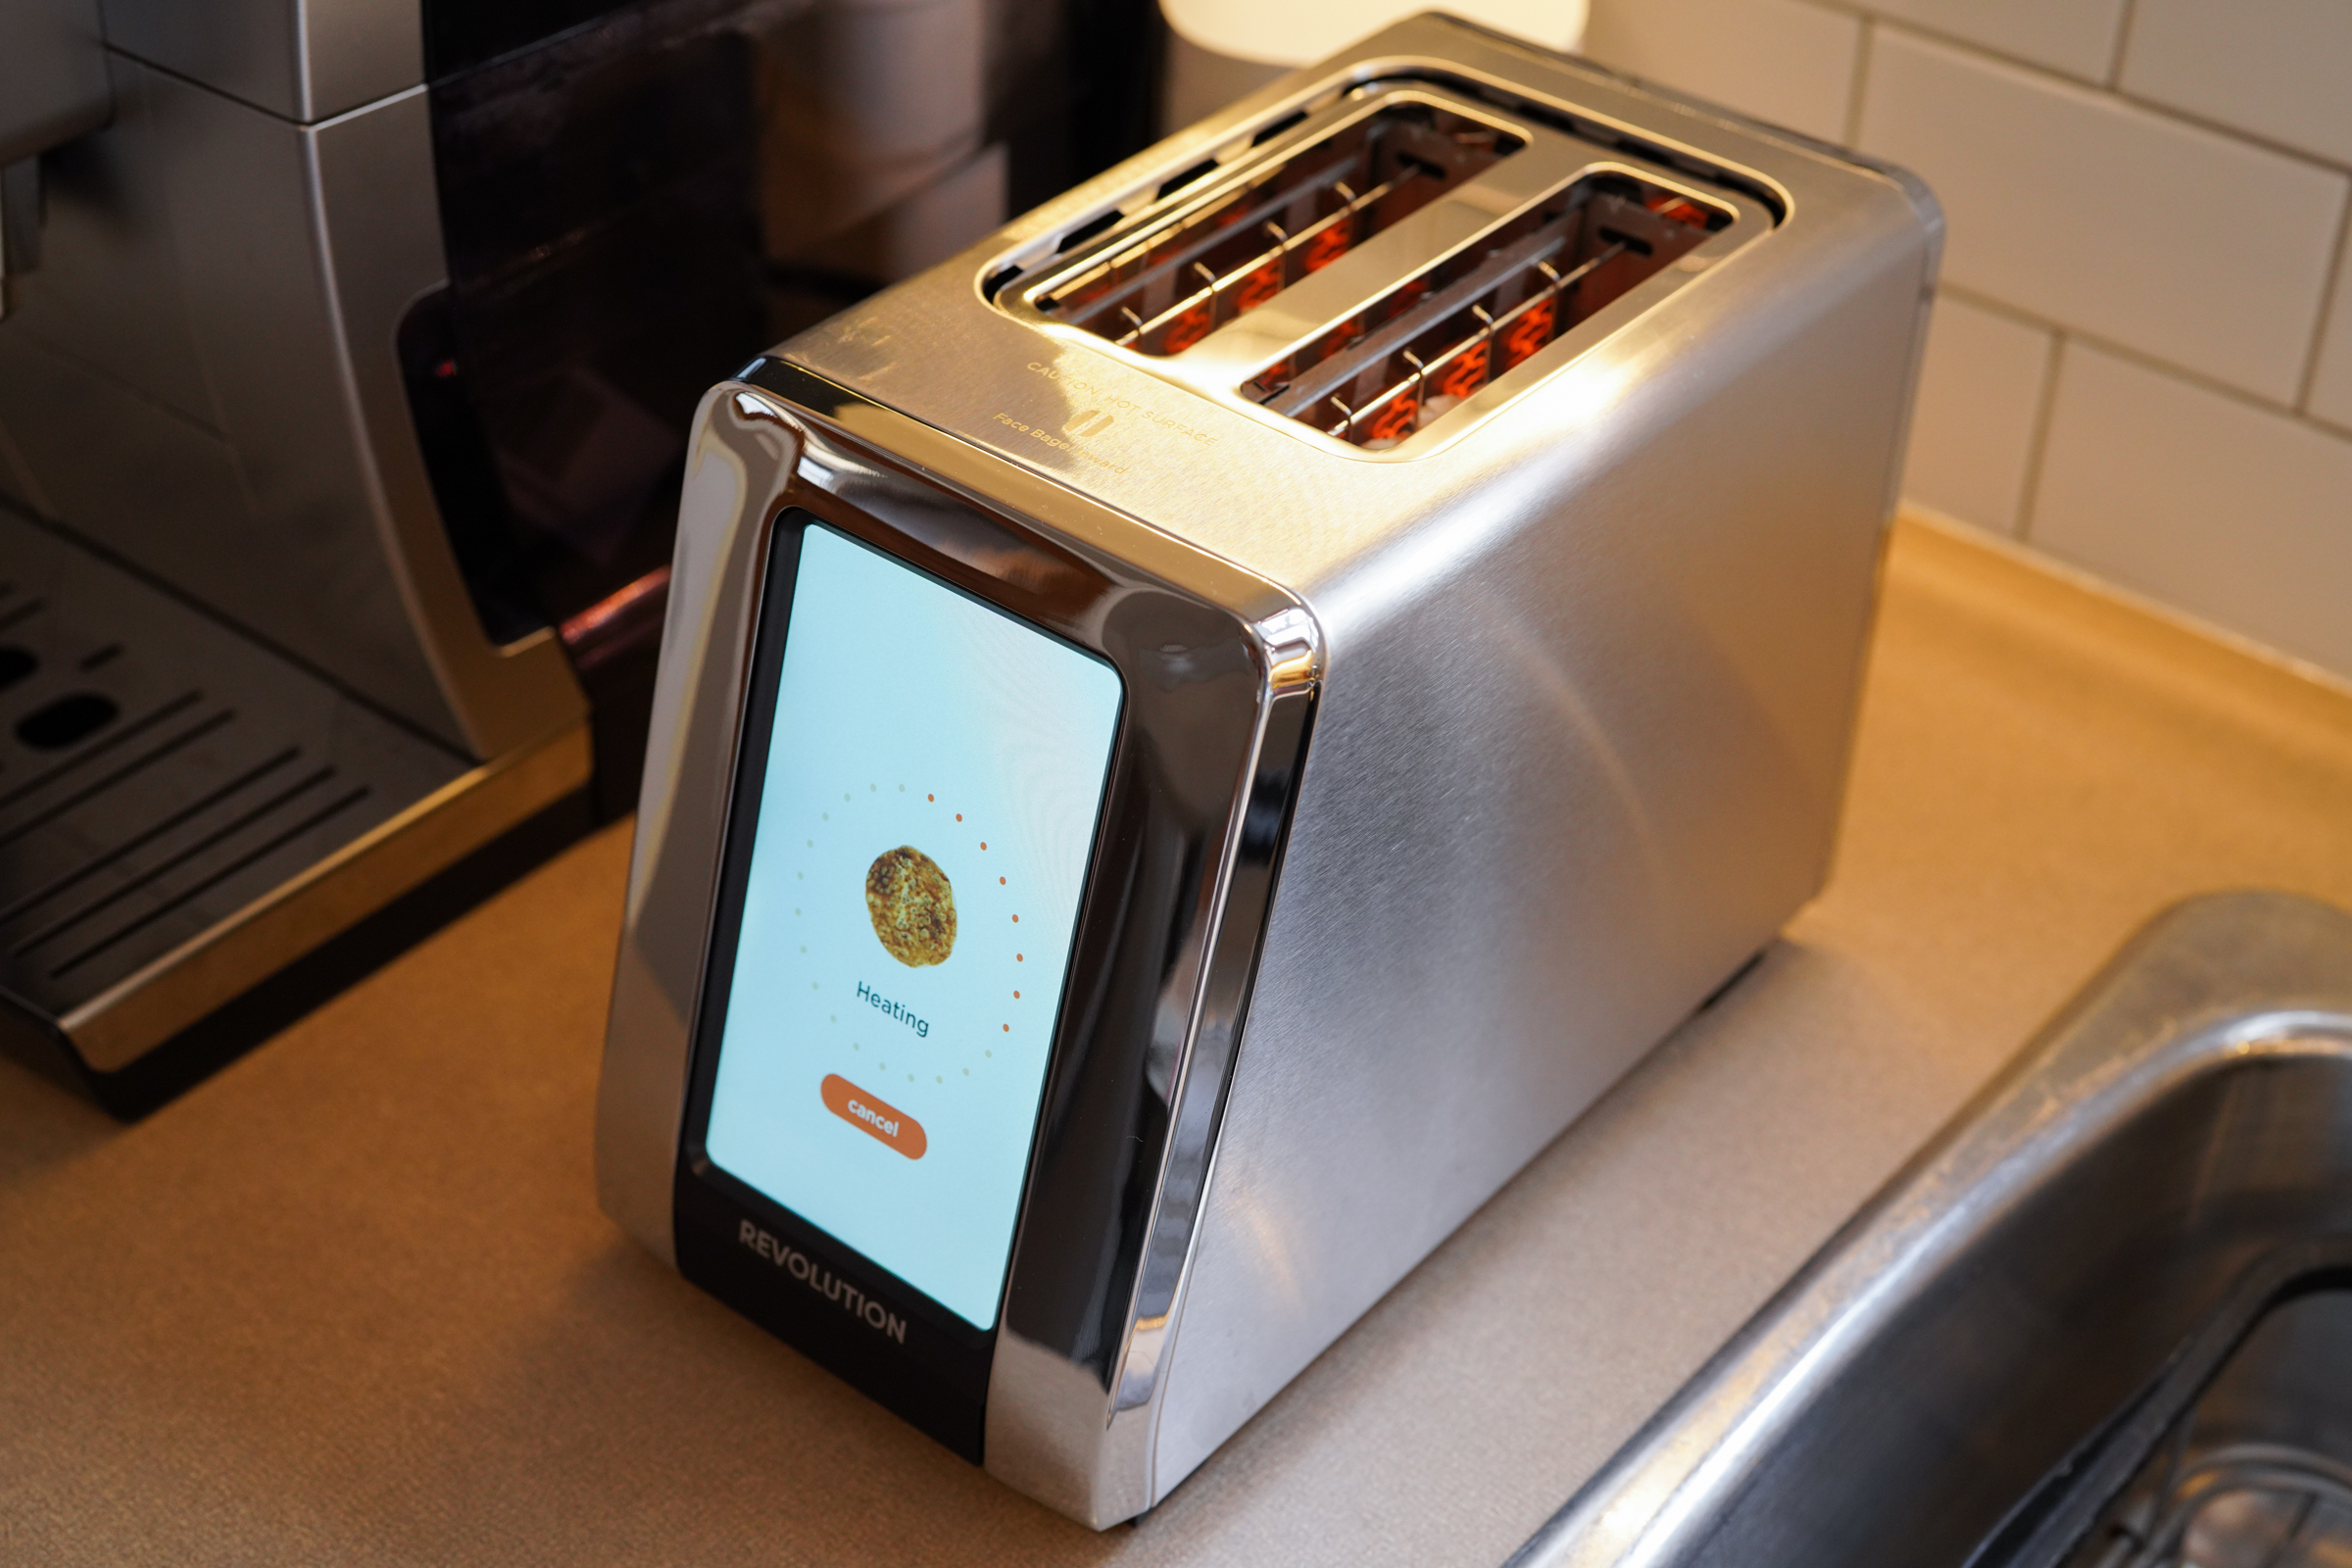 Revolution Cooking's R180 Smart Toaster delivers smarter, faster